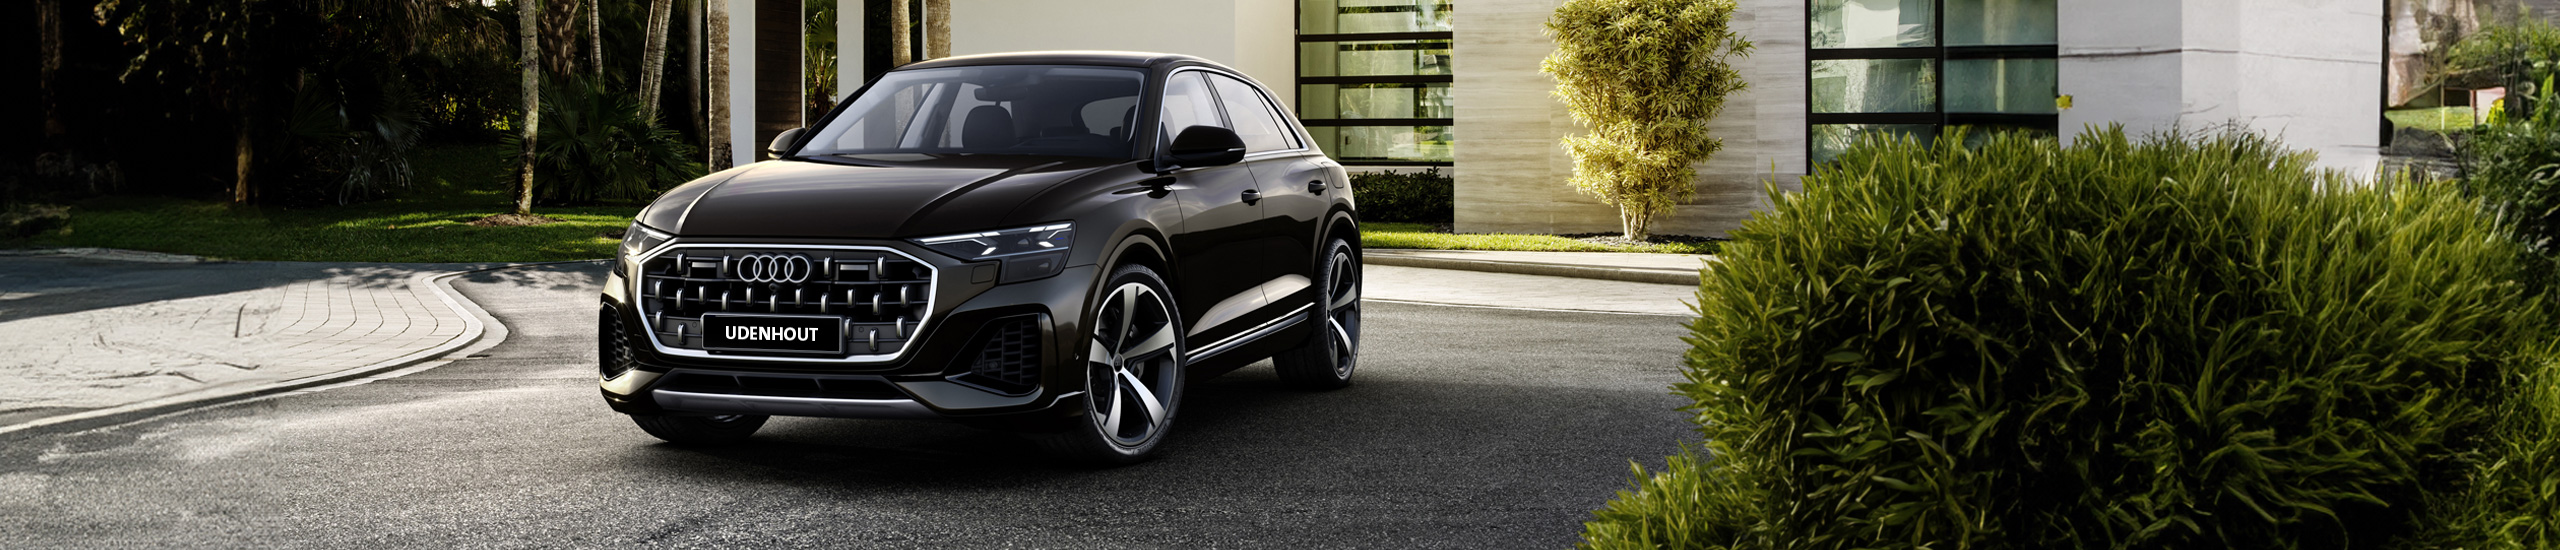 De nieuwe Audi Q8 biedt alles waar Audi bekend om staat: een expressief design, toonaangevende techniek en de kunst om ook de meest veeleisende mensen tevreden te stellen. 